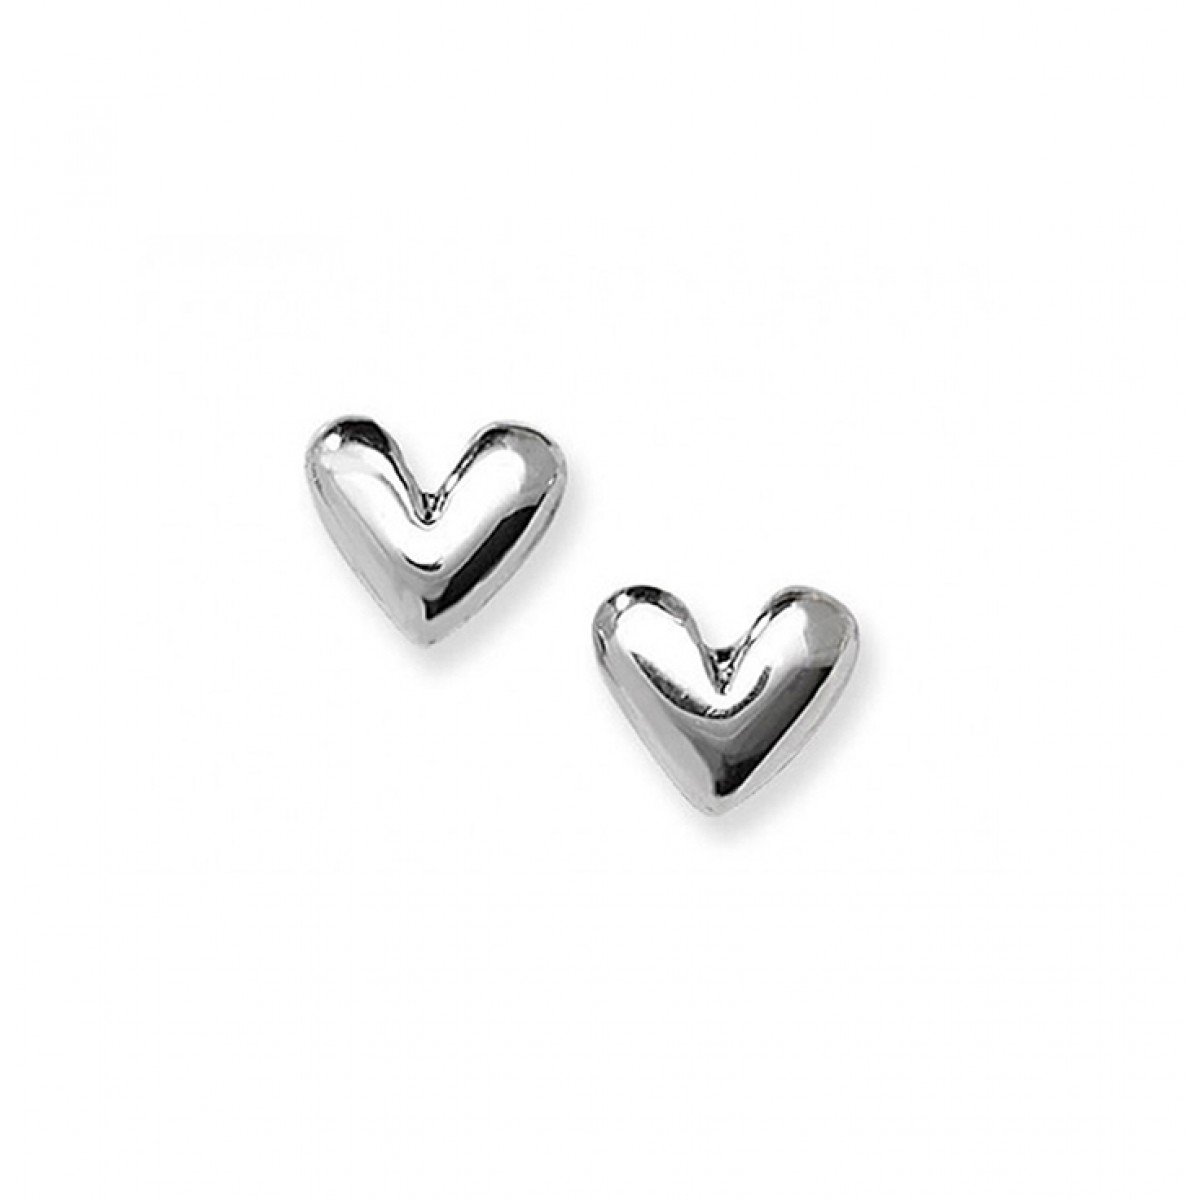 Small silver heart stud earrings, fine silver a... - Folksy